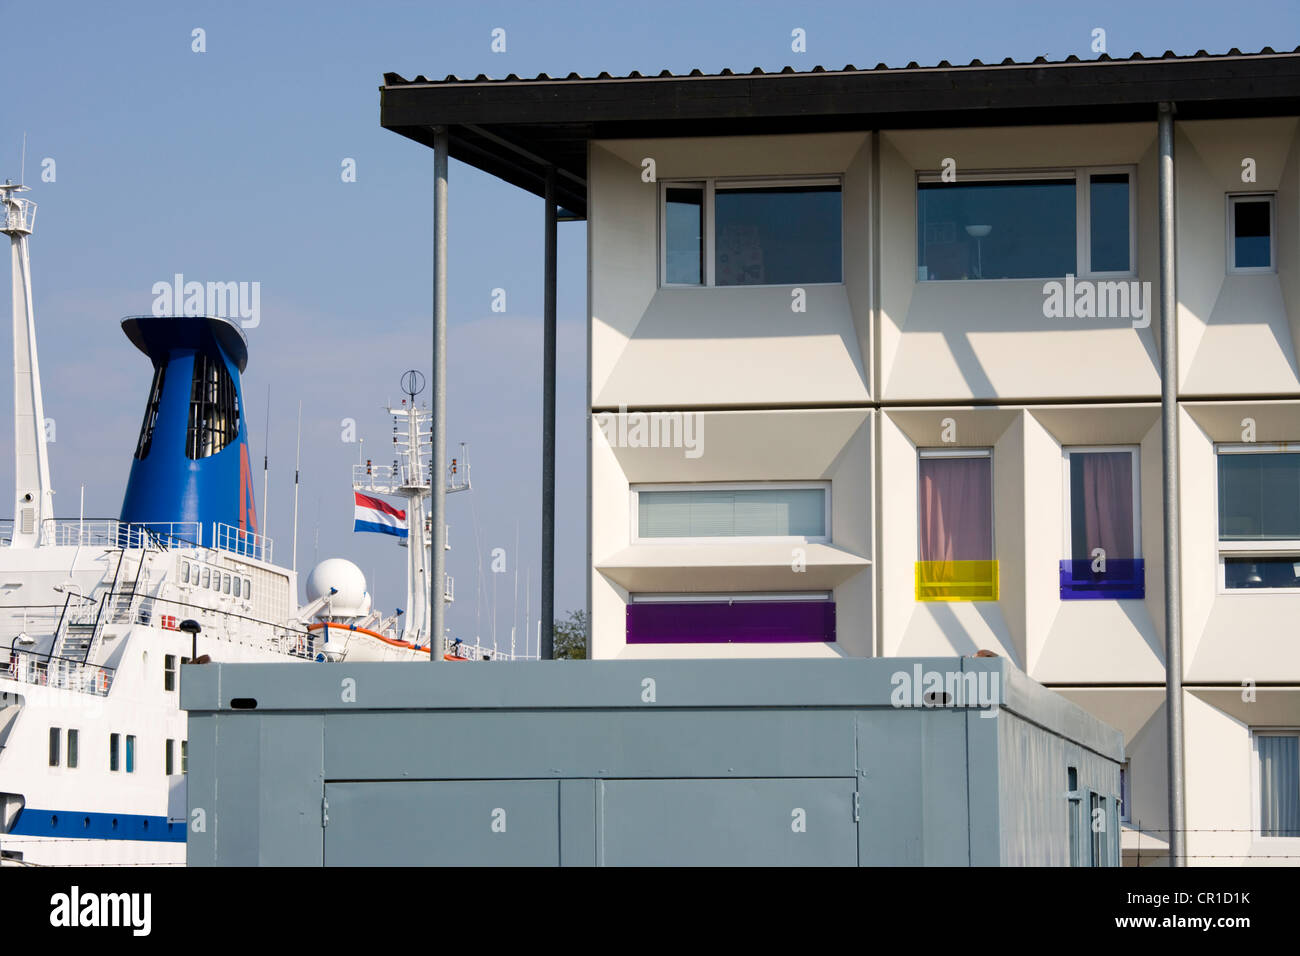 Prefab moderno alojamiento para estudiantes en el puerto, el puerto de Amsterdam, Docklands, utilizando contenedores de carga modular. Foto de stock